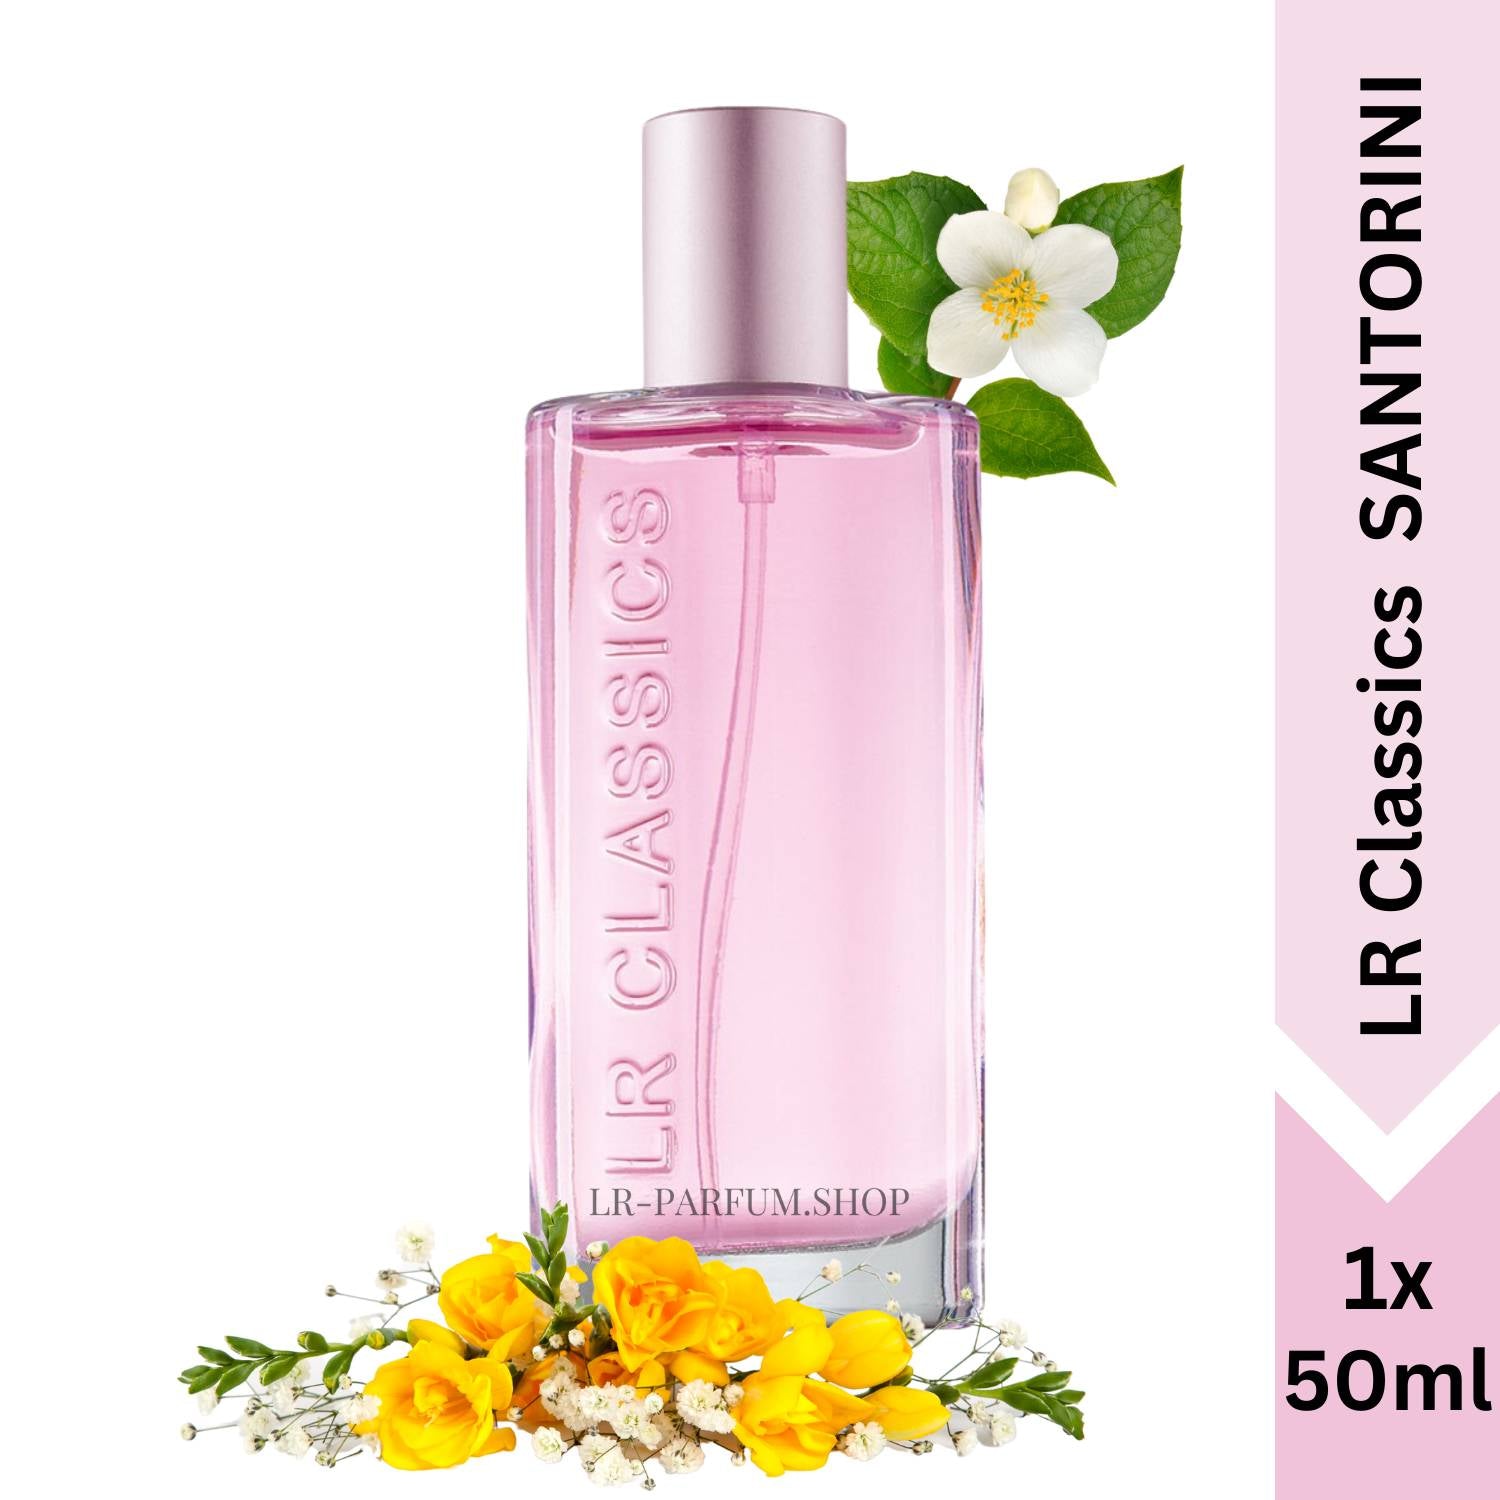 LR Classics Santorini - Eau de Parfum 50ml - LR-Parfum.shop